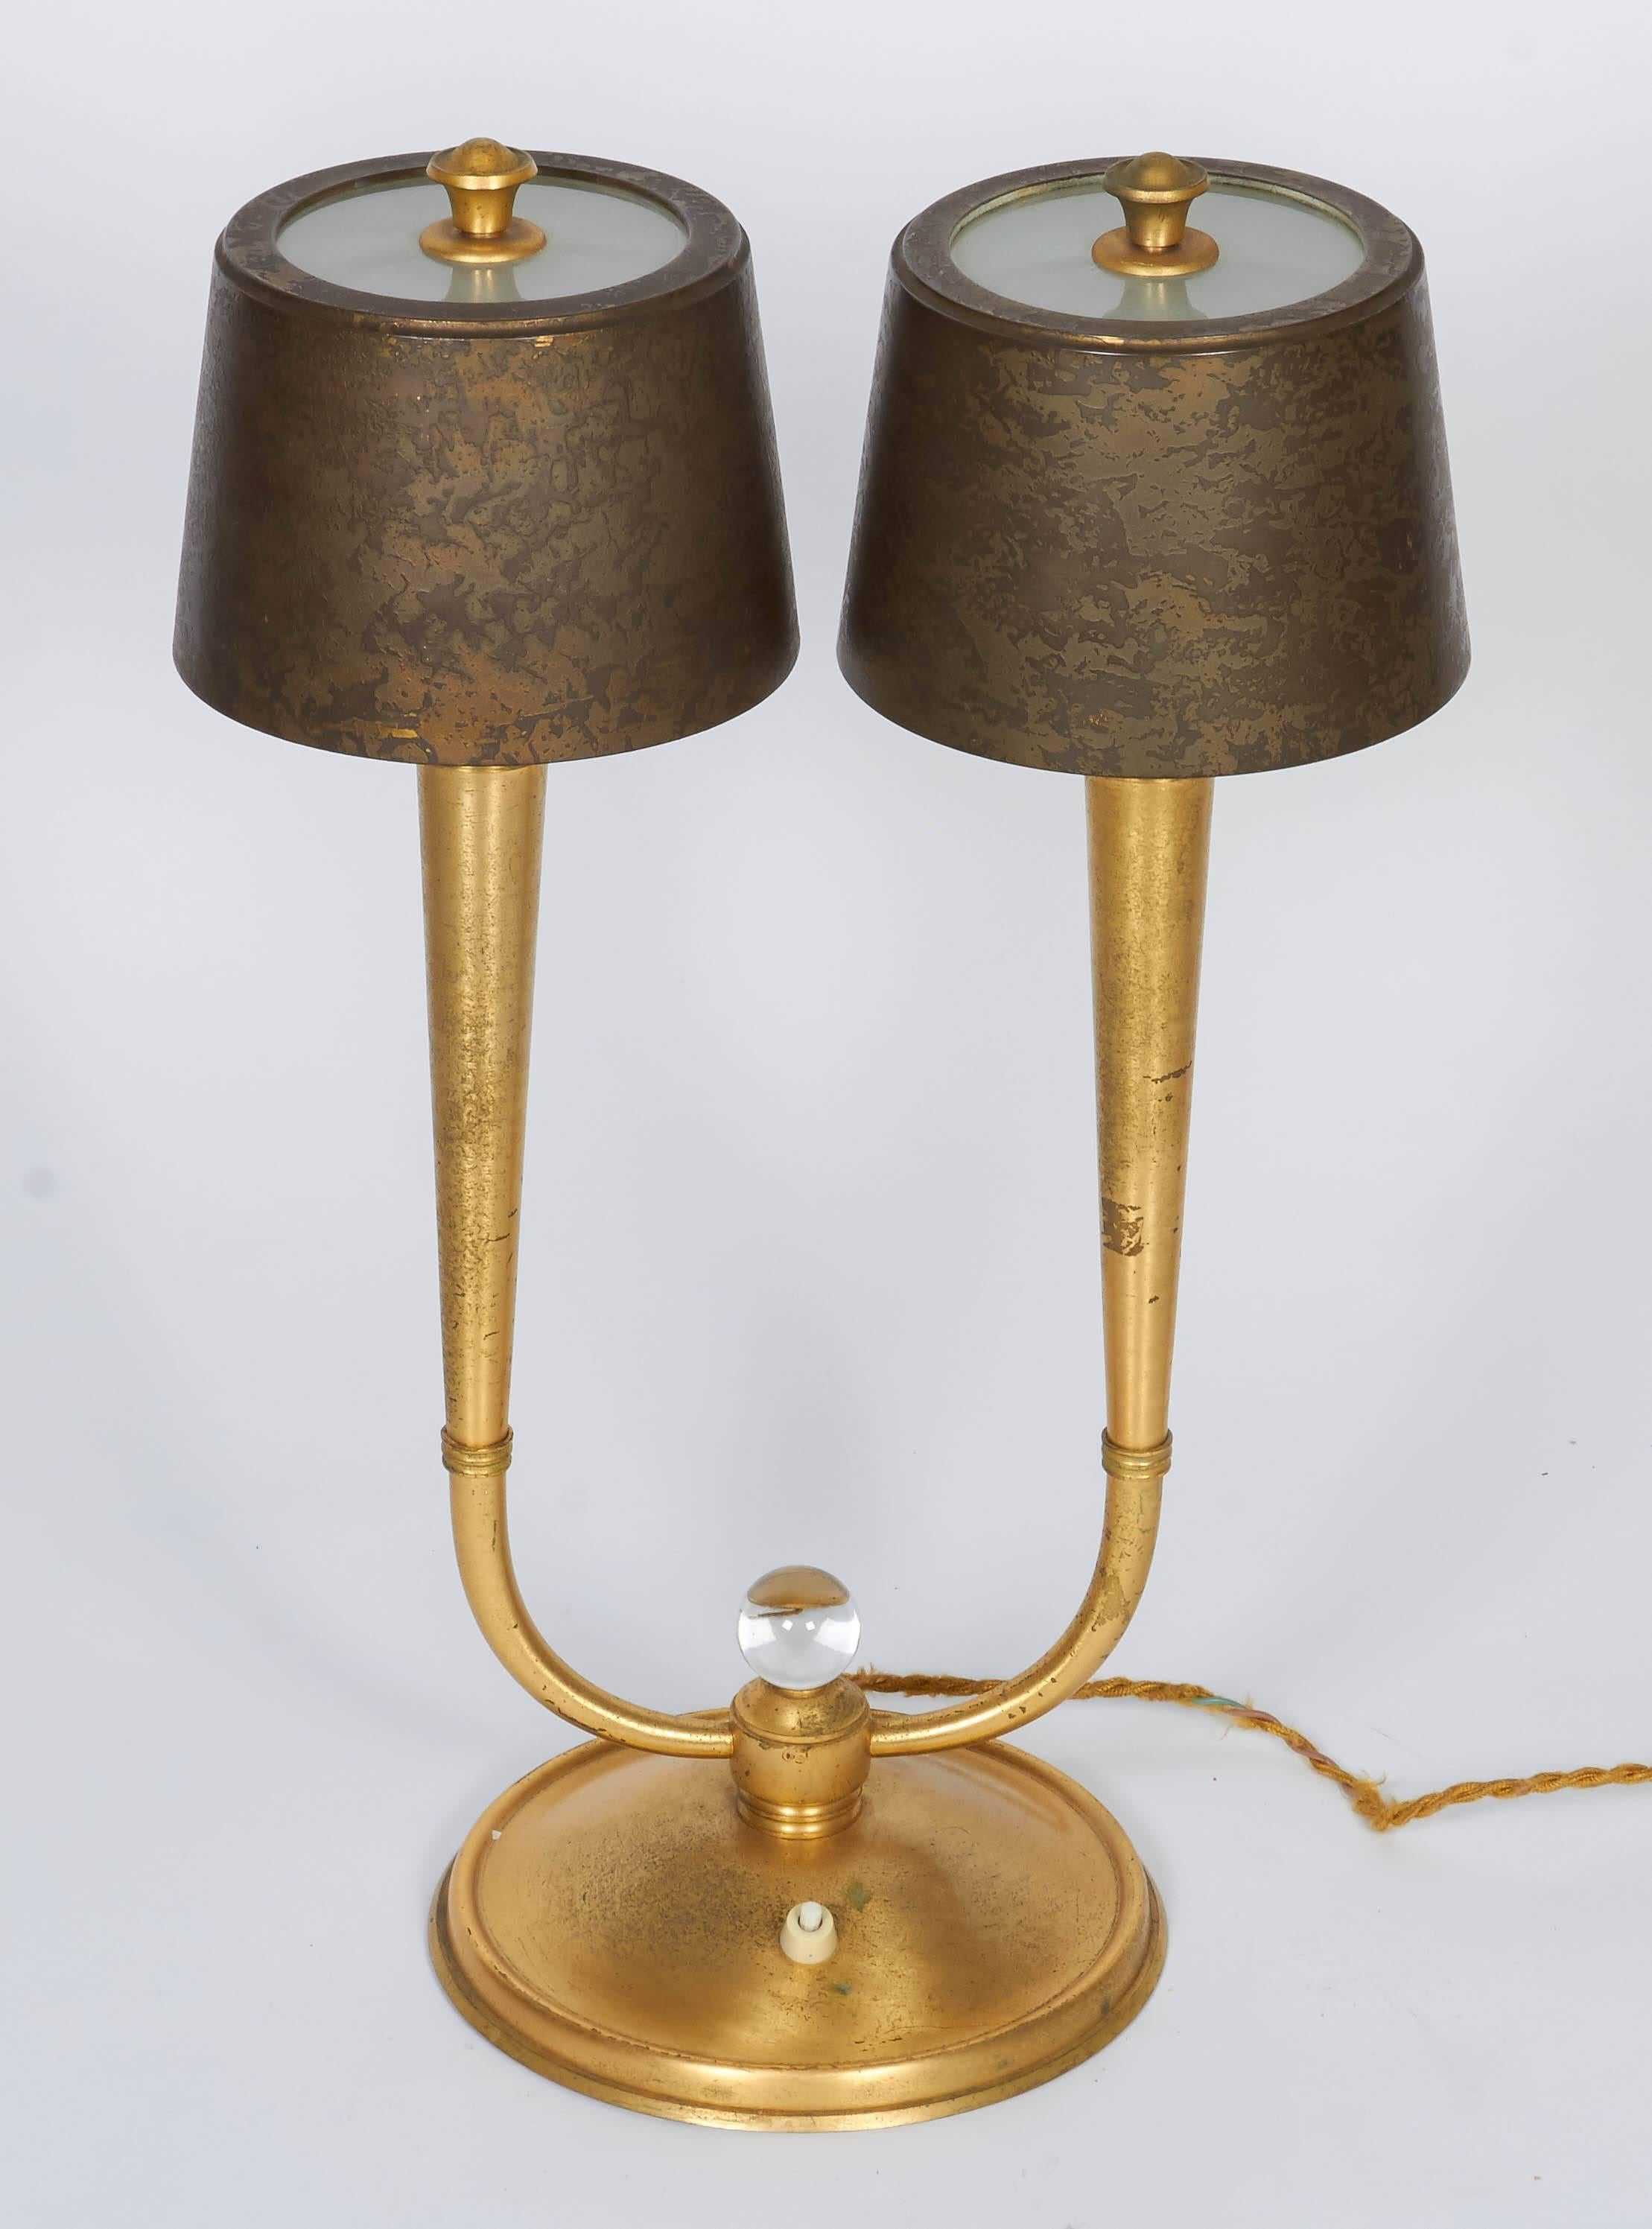 Paire de lampes de table de Gent et Michon en bronze doré.
Mesures : Hauteur : 20.5